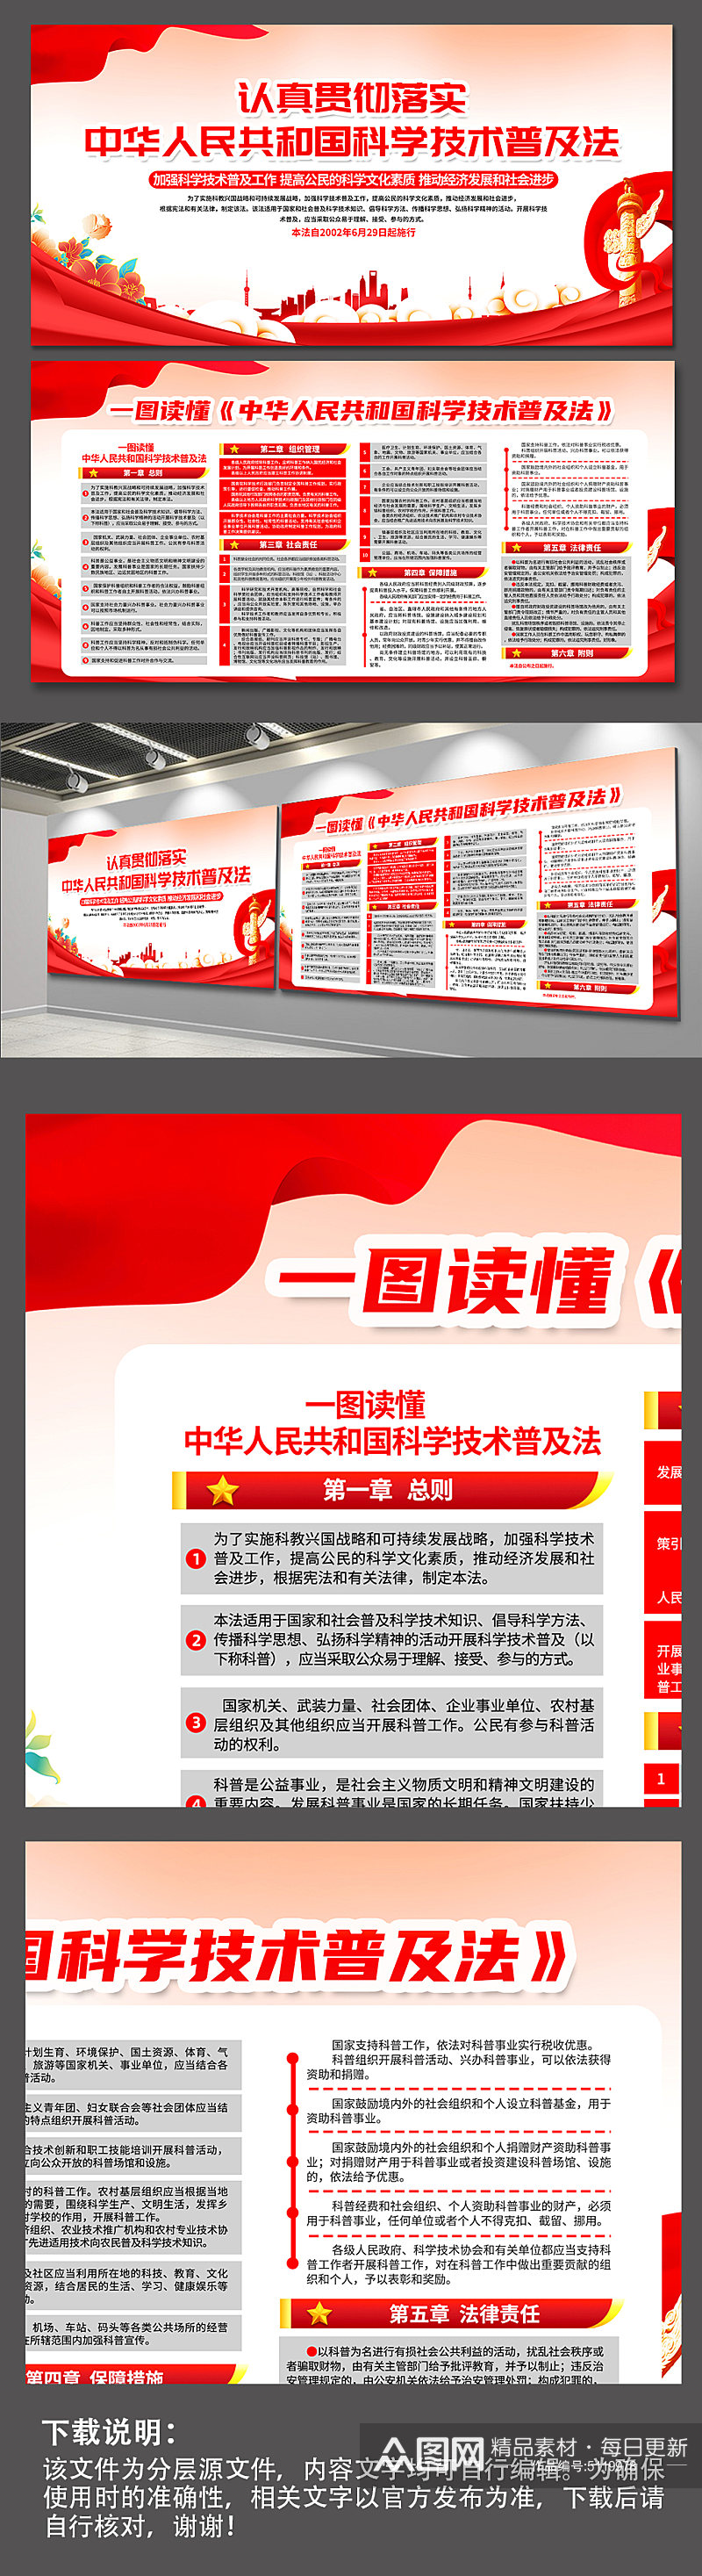 红色中华人民共和国科学技术普及法党建展板素材